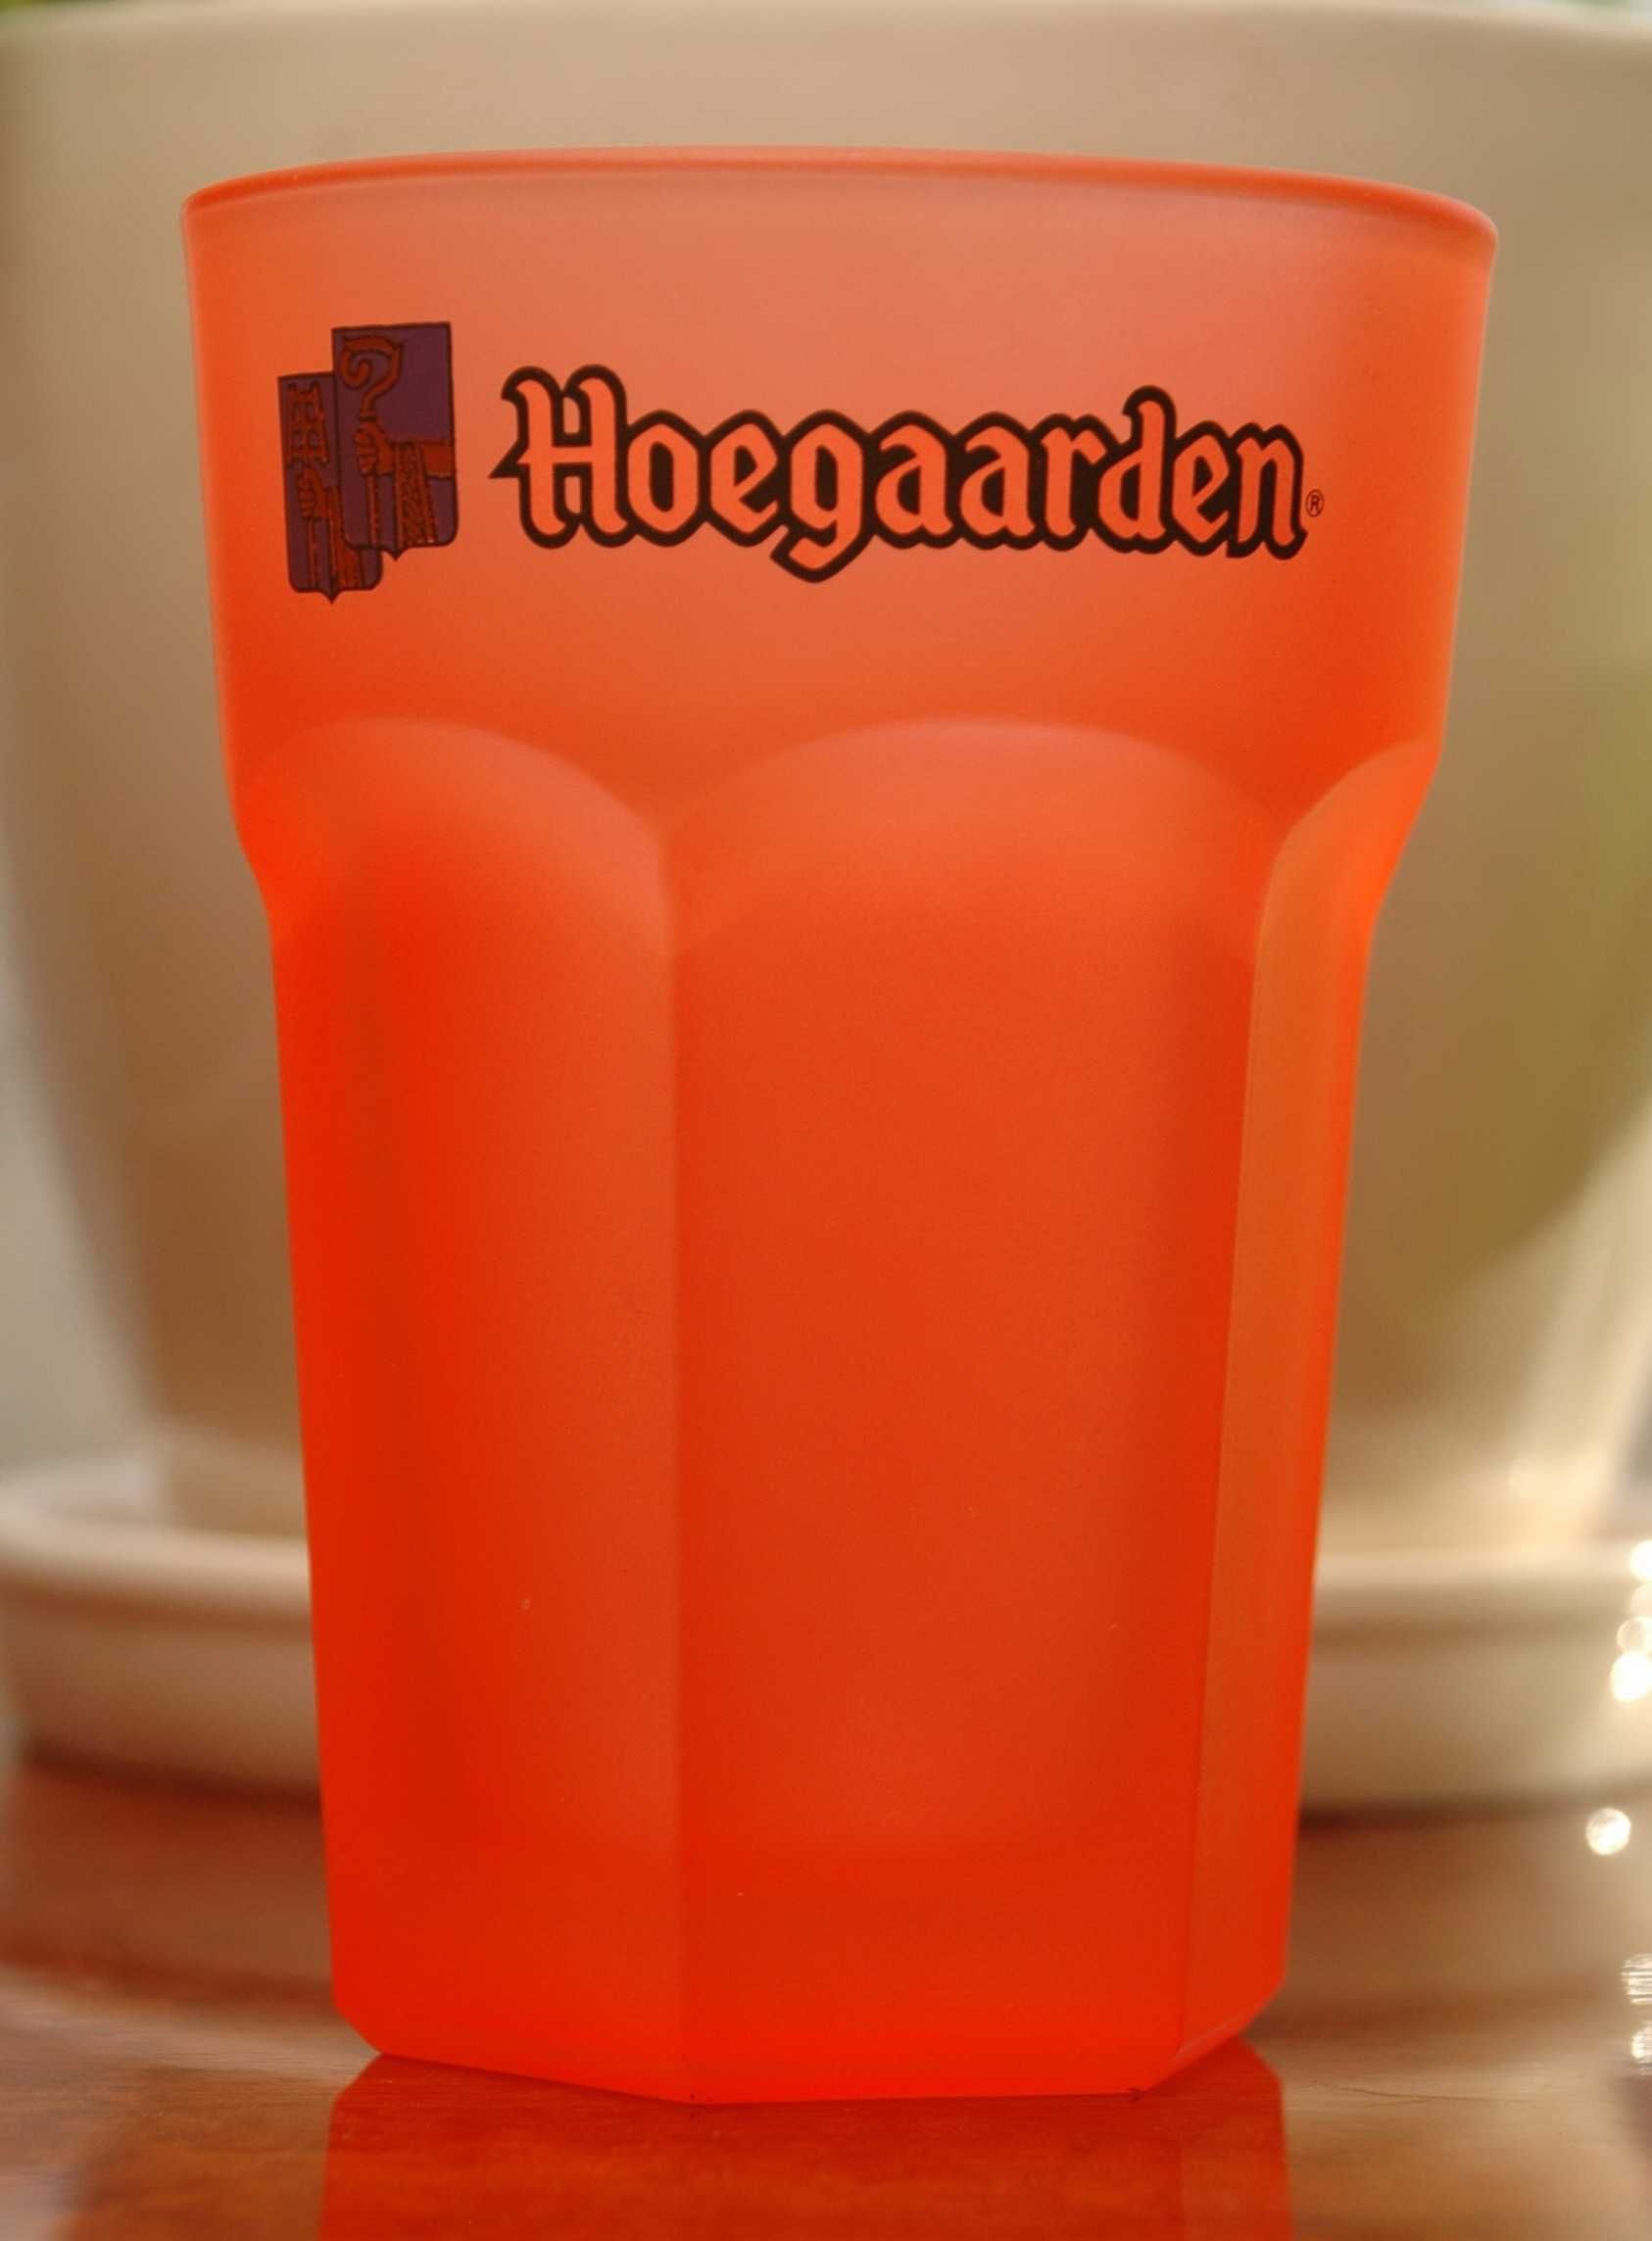 Hoegaarden Fluo пивной бокал зелёный редкий Бельгия 1 шт.